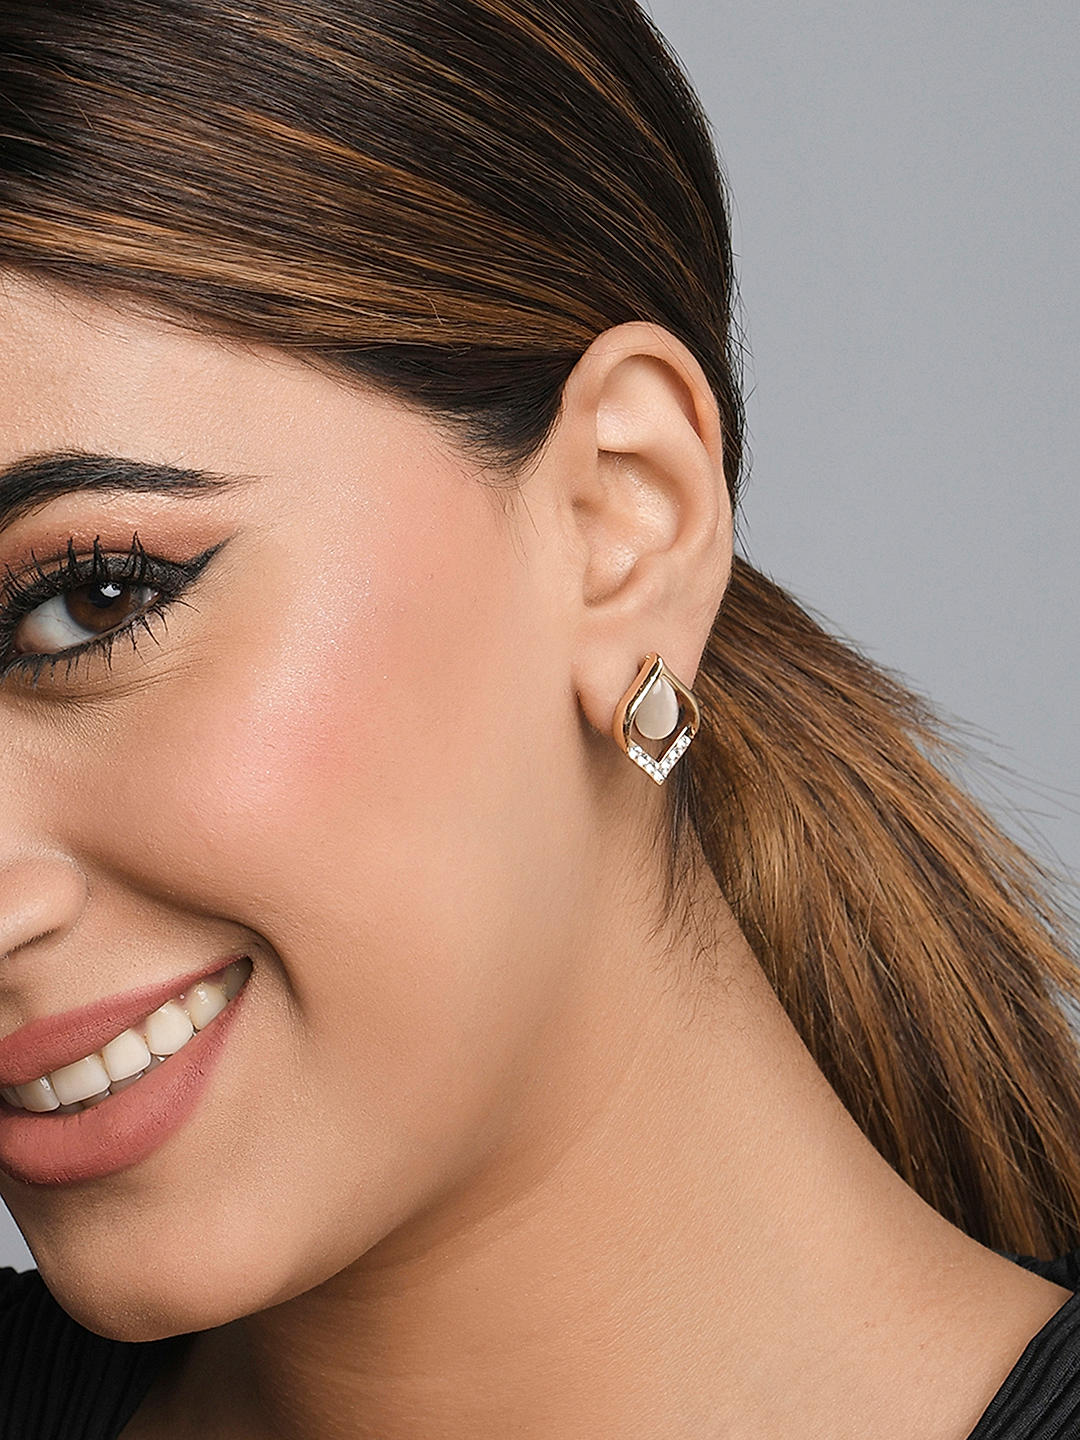 Beautiful Silver Earrings For Girls  Petal Designed Earring  Earrings  Jewellery  FOLKWAYS